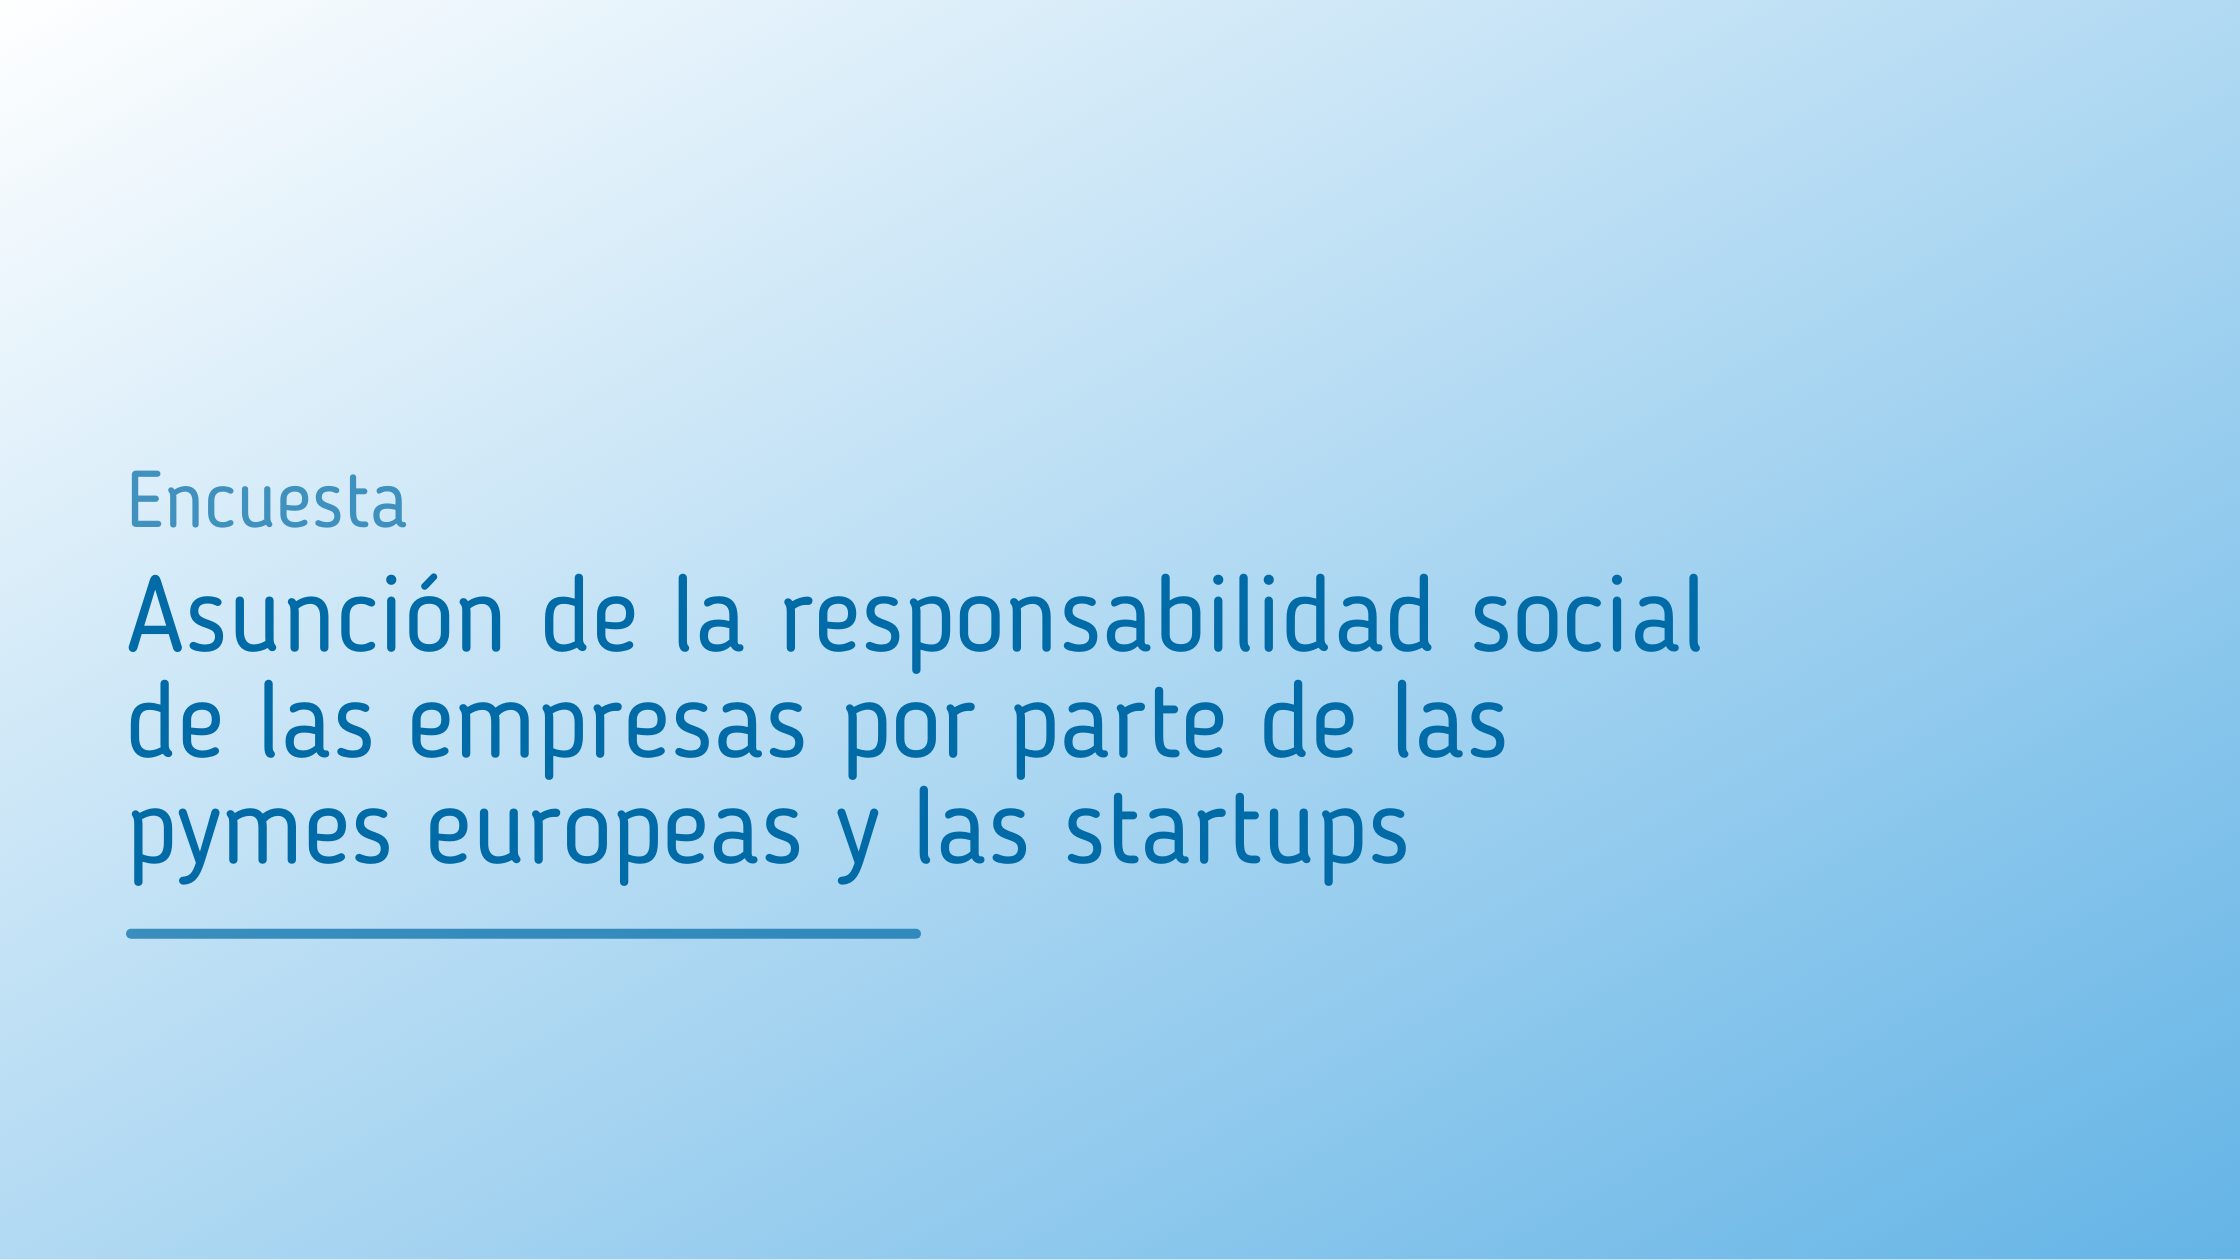 Encuesta_Asunción_de_la_responsabilidad_social_de_las_empresas_por_parte_de_las_pymes_europeas_y_las_startups